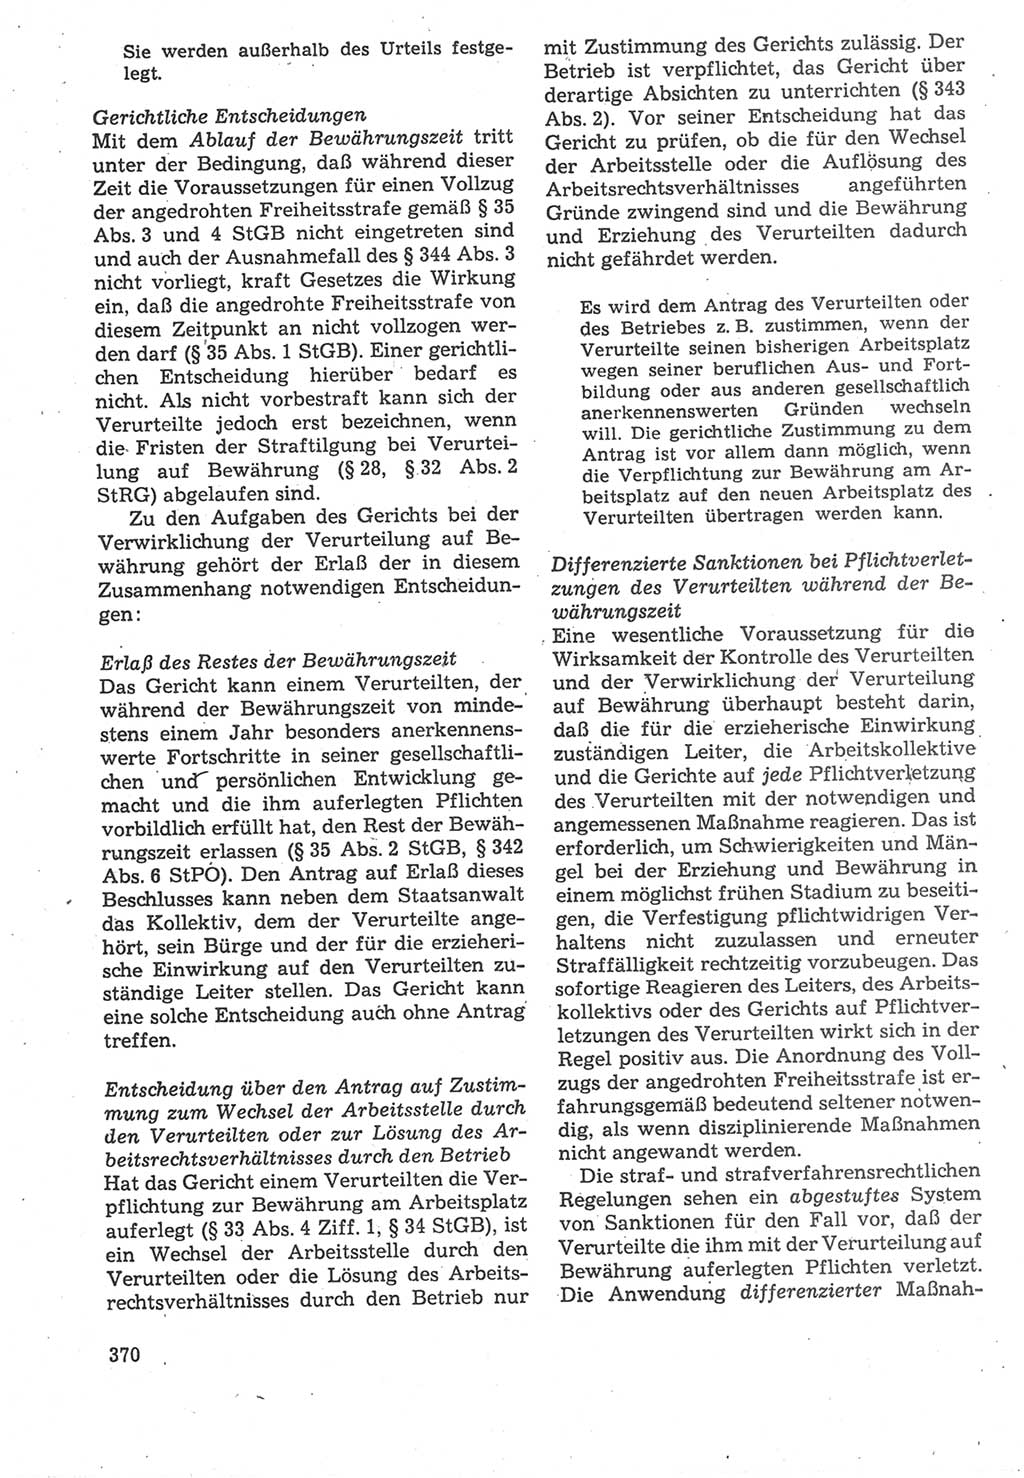 Strafverfahrensrecht [Deutsche Demokratische Republik (DDR)], Lehrbuch 1987, Seite 370 (Strafverf.-R. DDR Lb. 1987, S. 370)